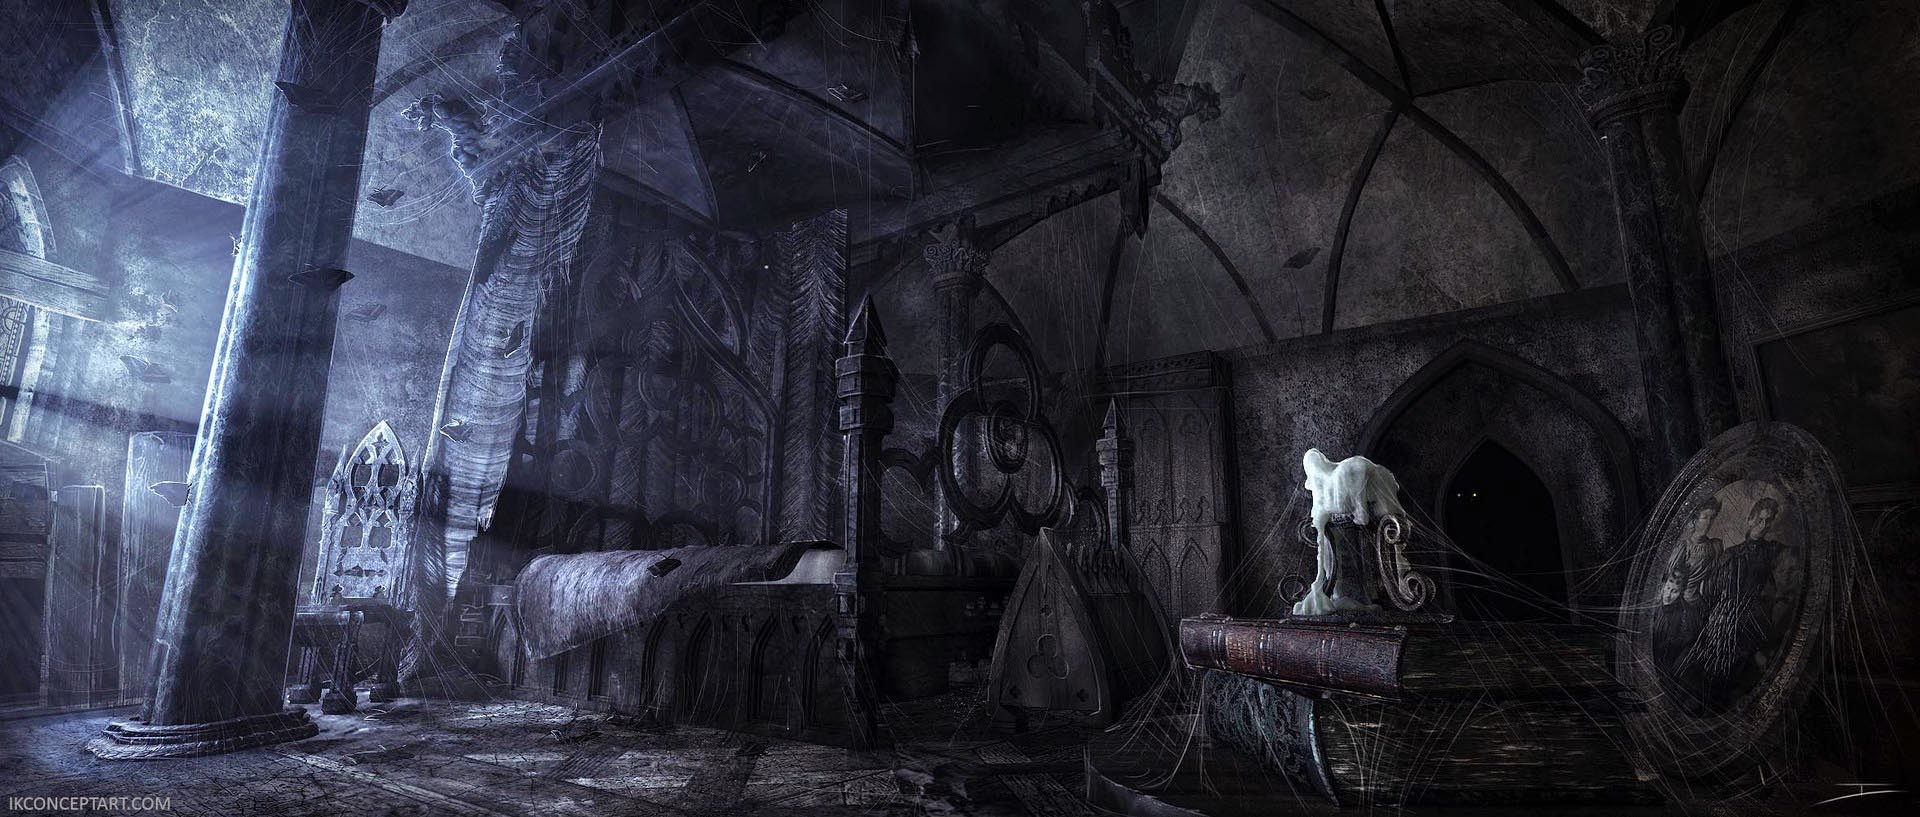 igor-kirdeika-igorkirdeika-hauntedbedroom.jpg